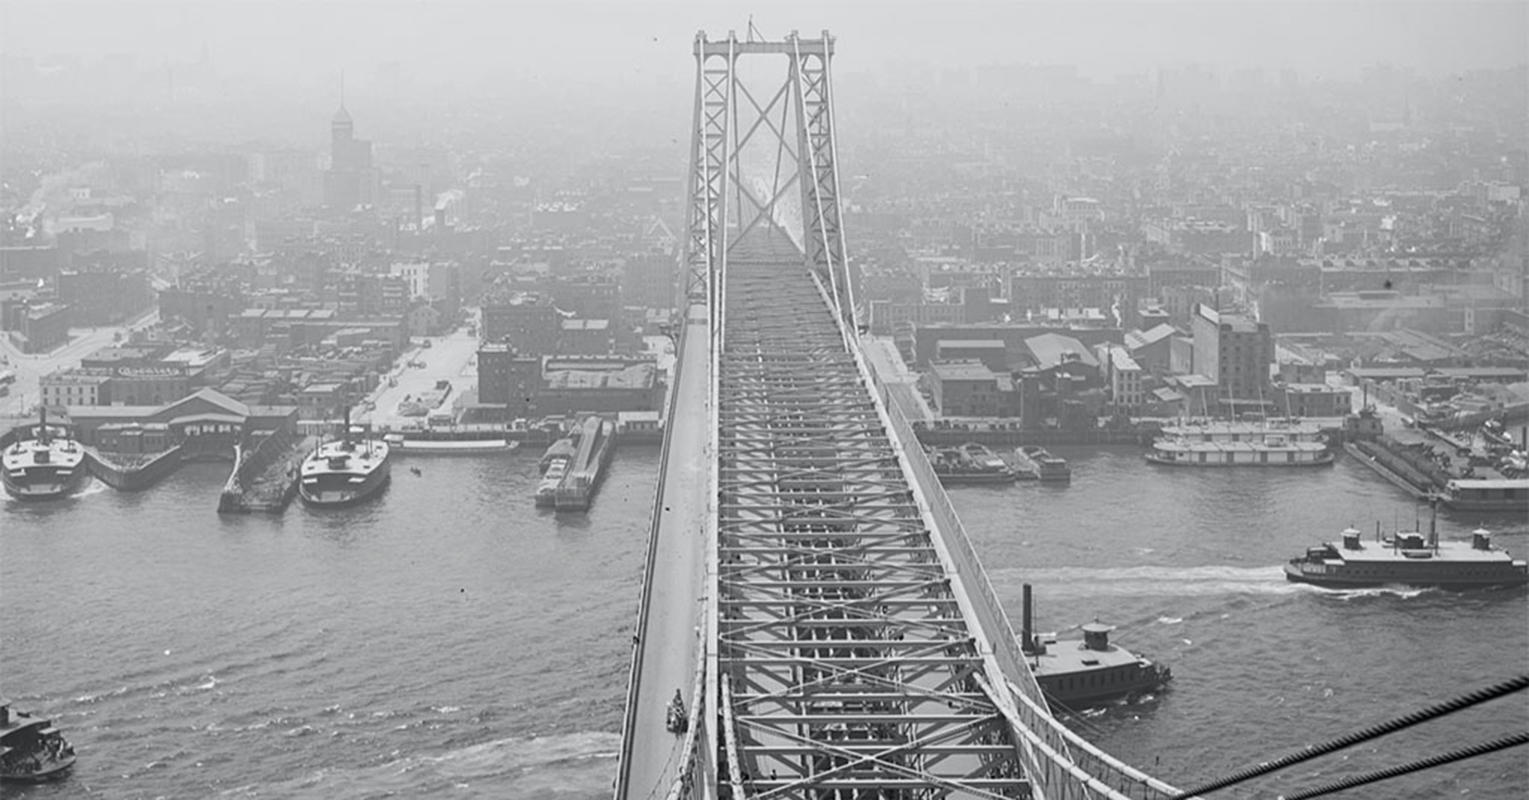 Williamsburg bridge vintage photo